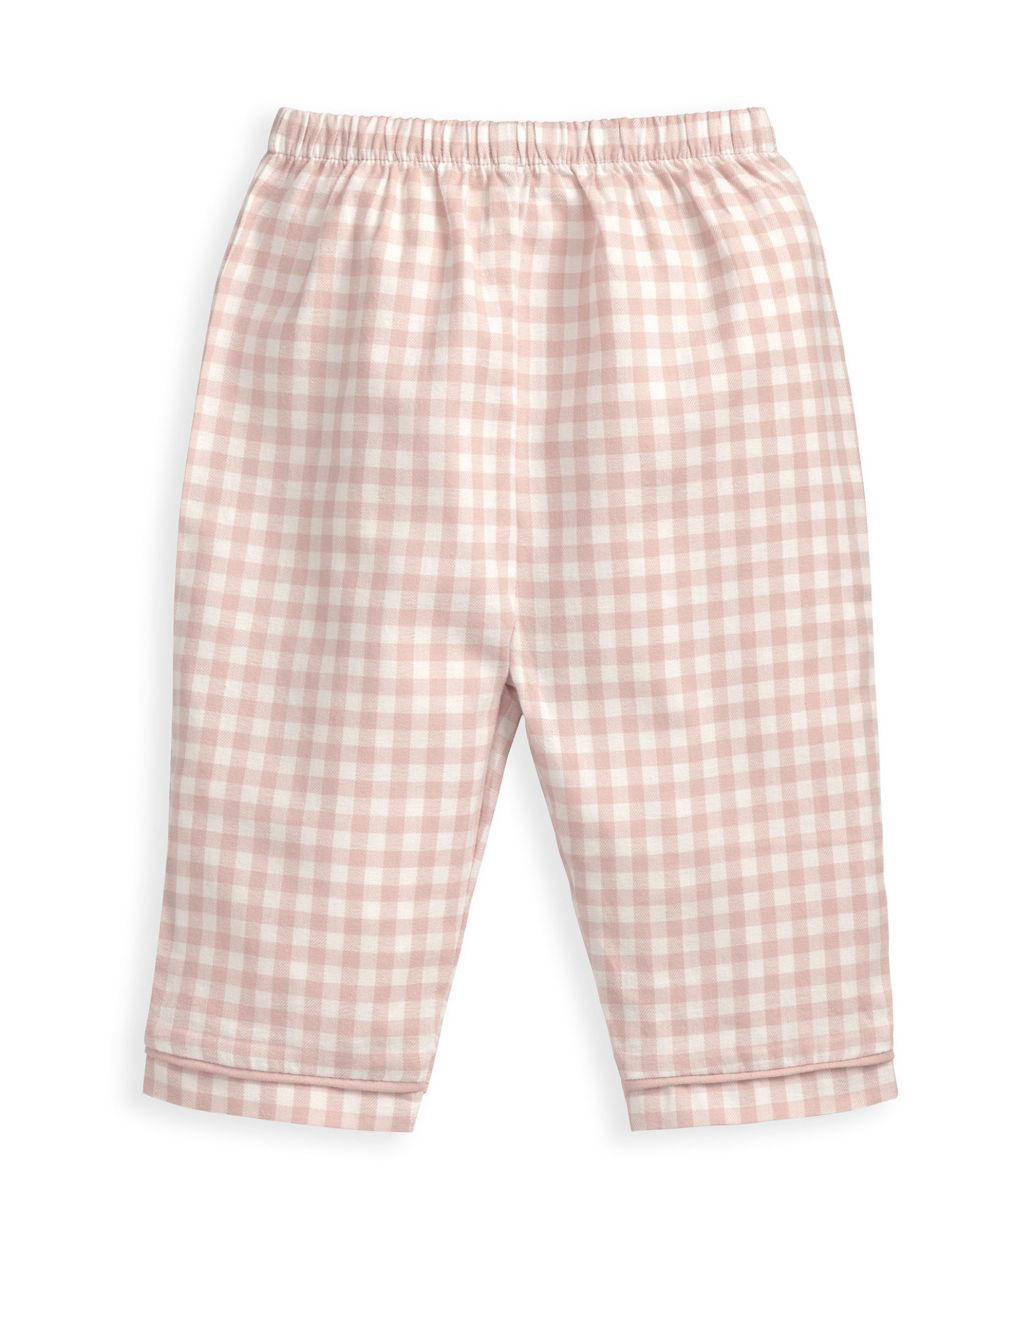 Pink Check Woven Pyjamas (6 Mths-3 yrs) image 3